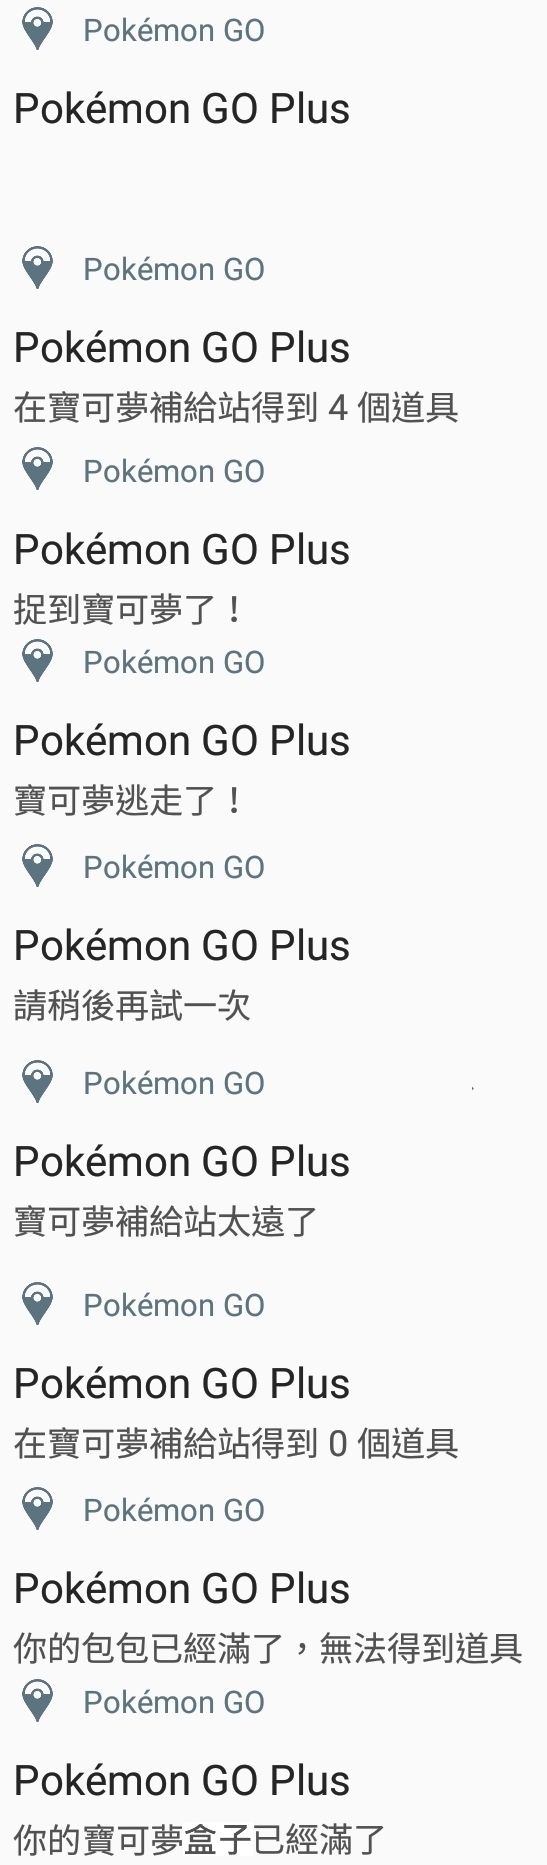 情報 垢普拉斯pokemon Go Plus助手app For Android Pokemon Go 哈啦板 巴哈姆特